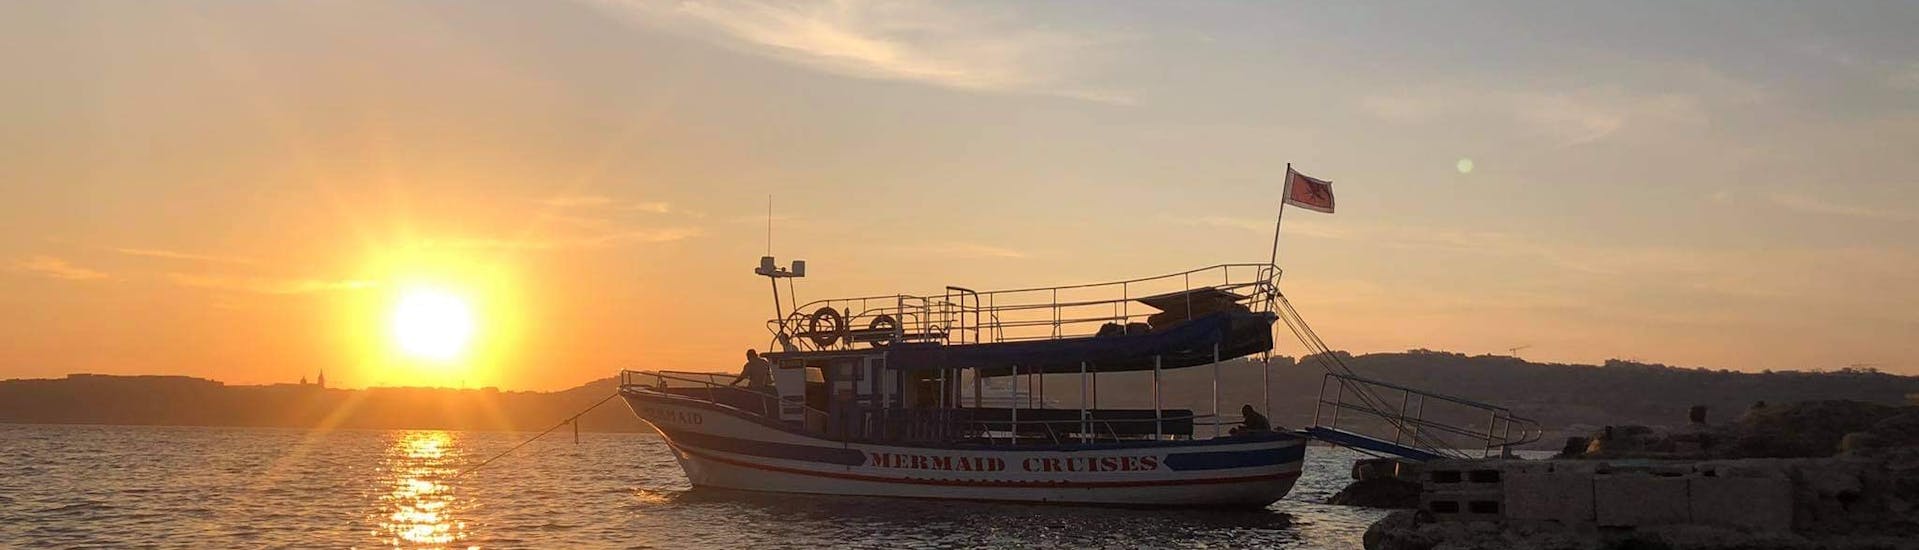 Notre bateau sur l'eau au milieu du coucher de soleil lors de la croisière vers le lagon bleu de Comino avec Mermaid Cruises Malta.